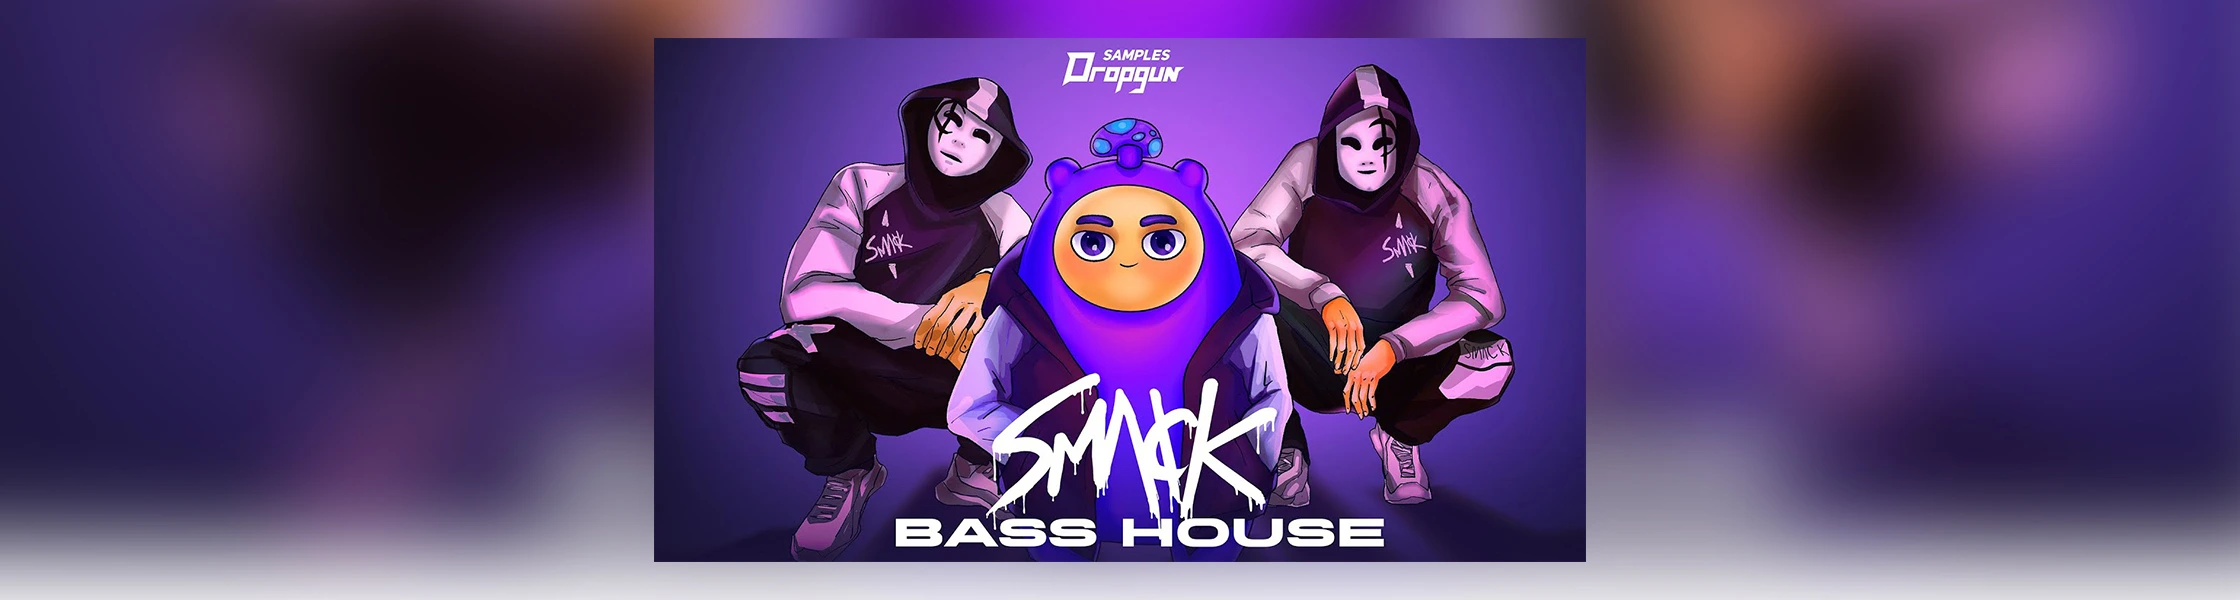 Dropgun Samples SMACK Bass House